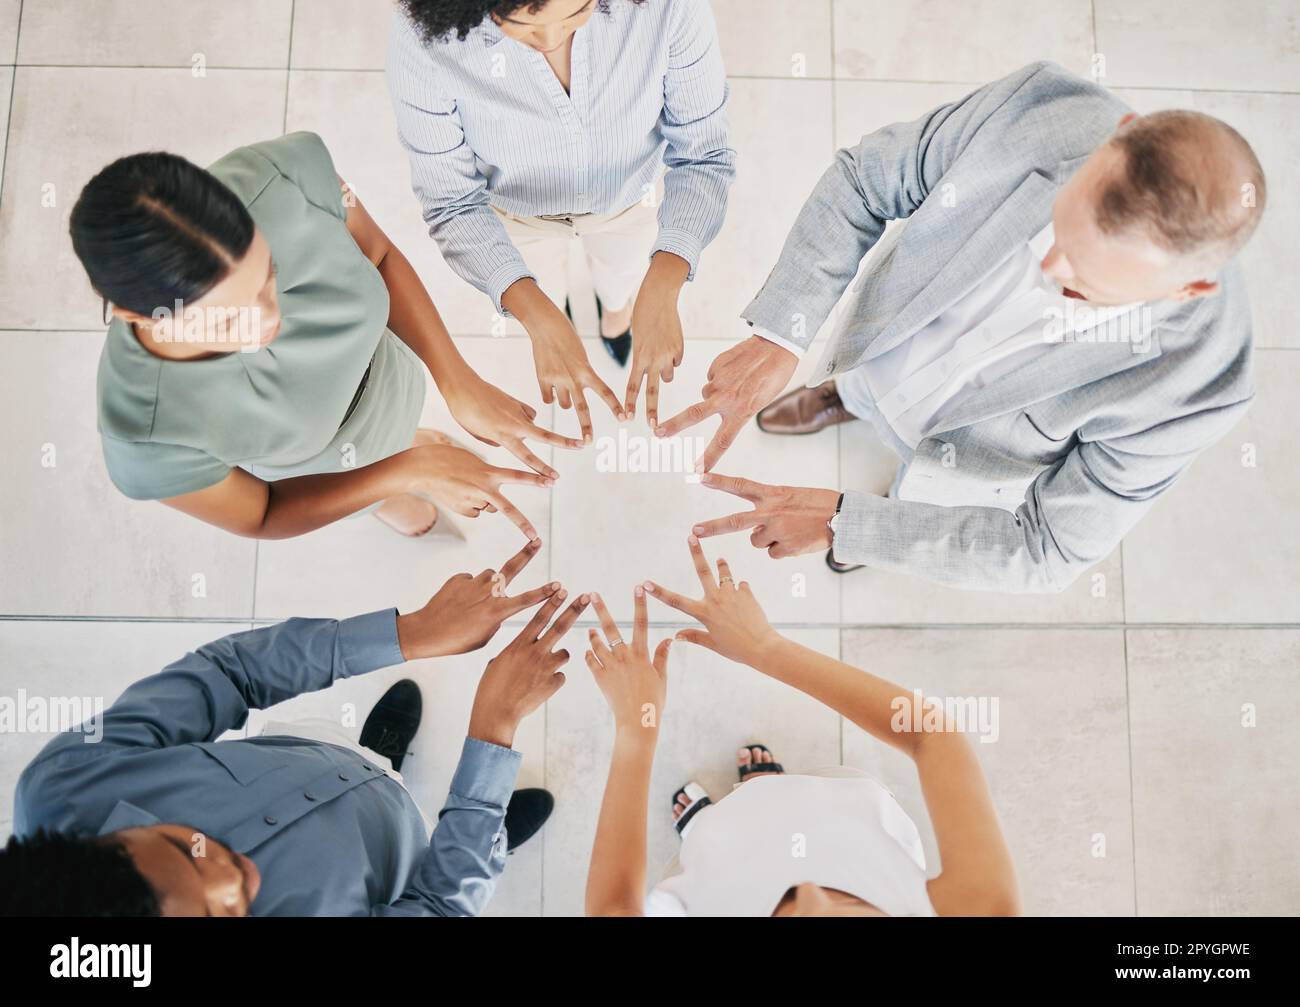 Ruhe, Hände und Sicht von oben auf Teambildung, Geschäftsleute und Unterstützung bei Zusammenarbeit, Hoffnung und Unternehmensphilosophie. Vertrauen, Partnerschaft und Sternenfinger, V sign Emoji und Diversität Teamwork des Erfolgs Stockfoto